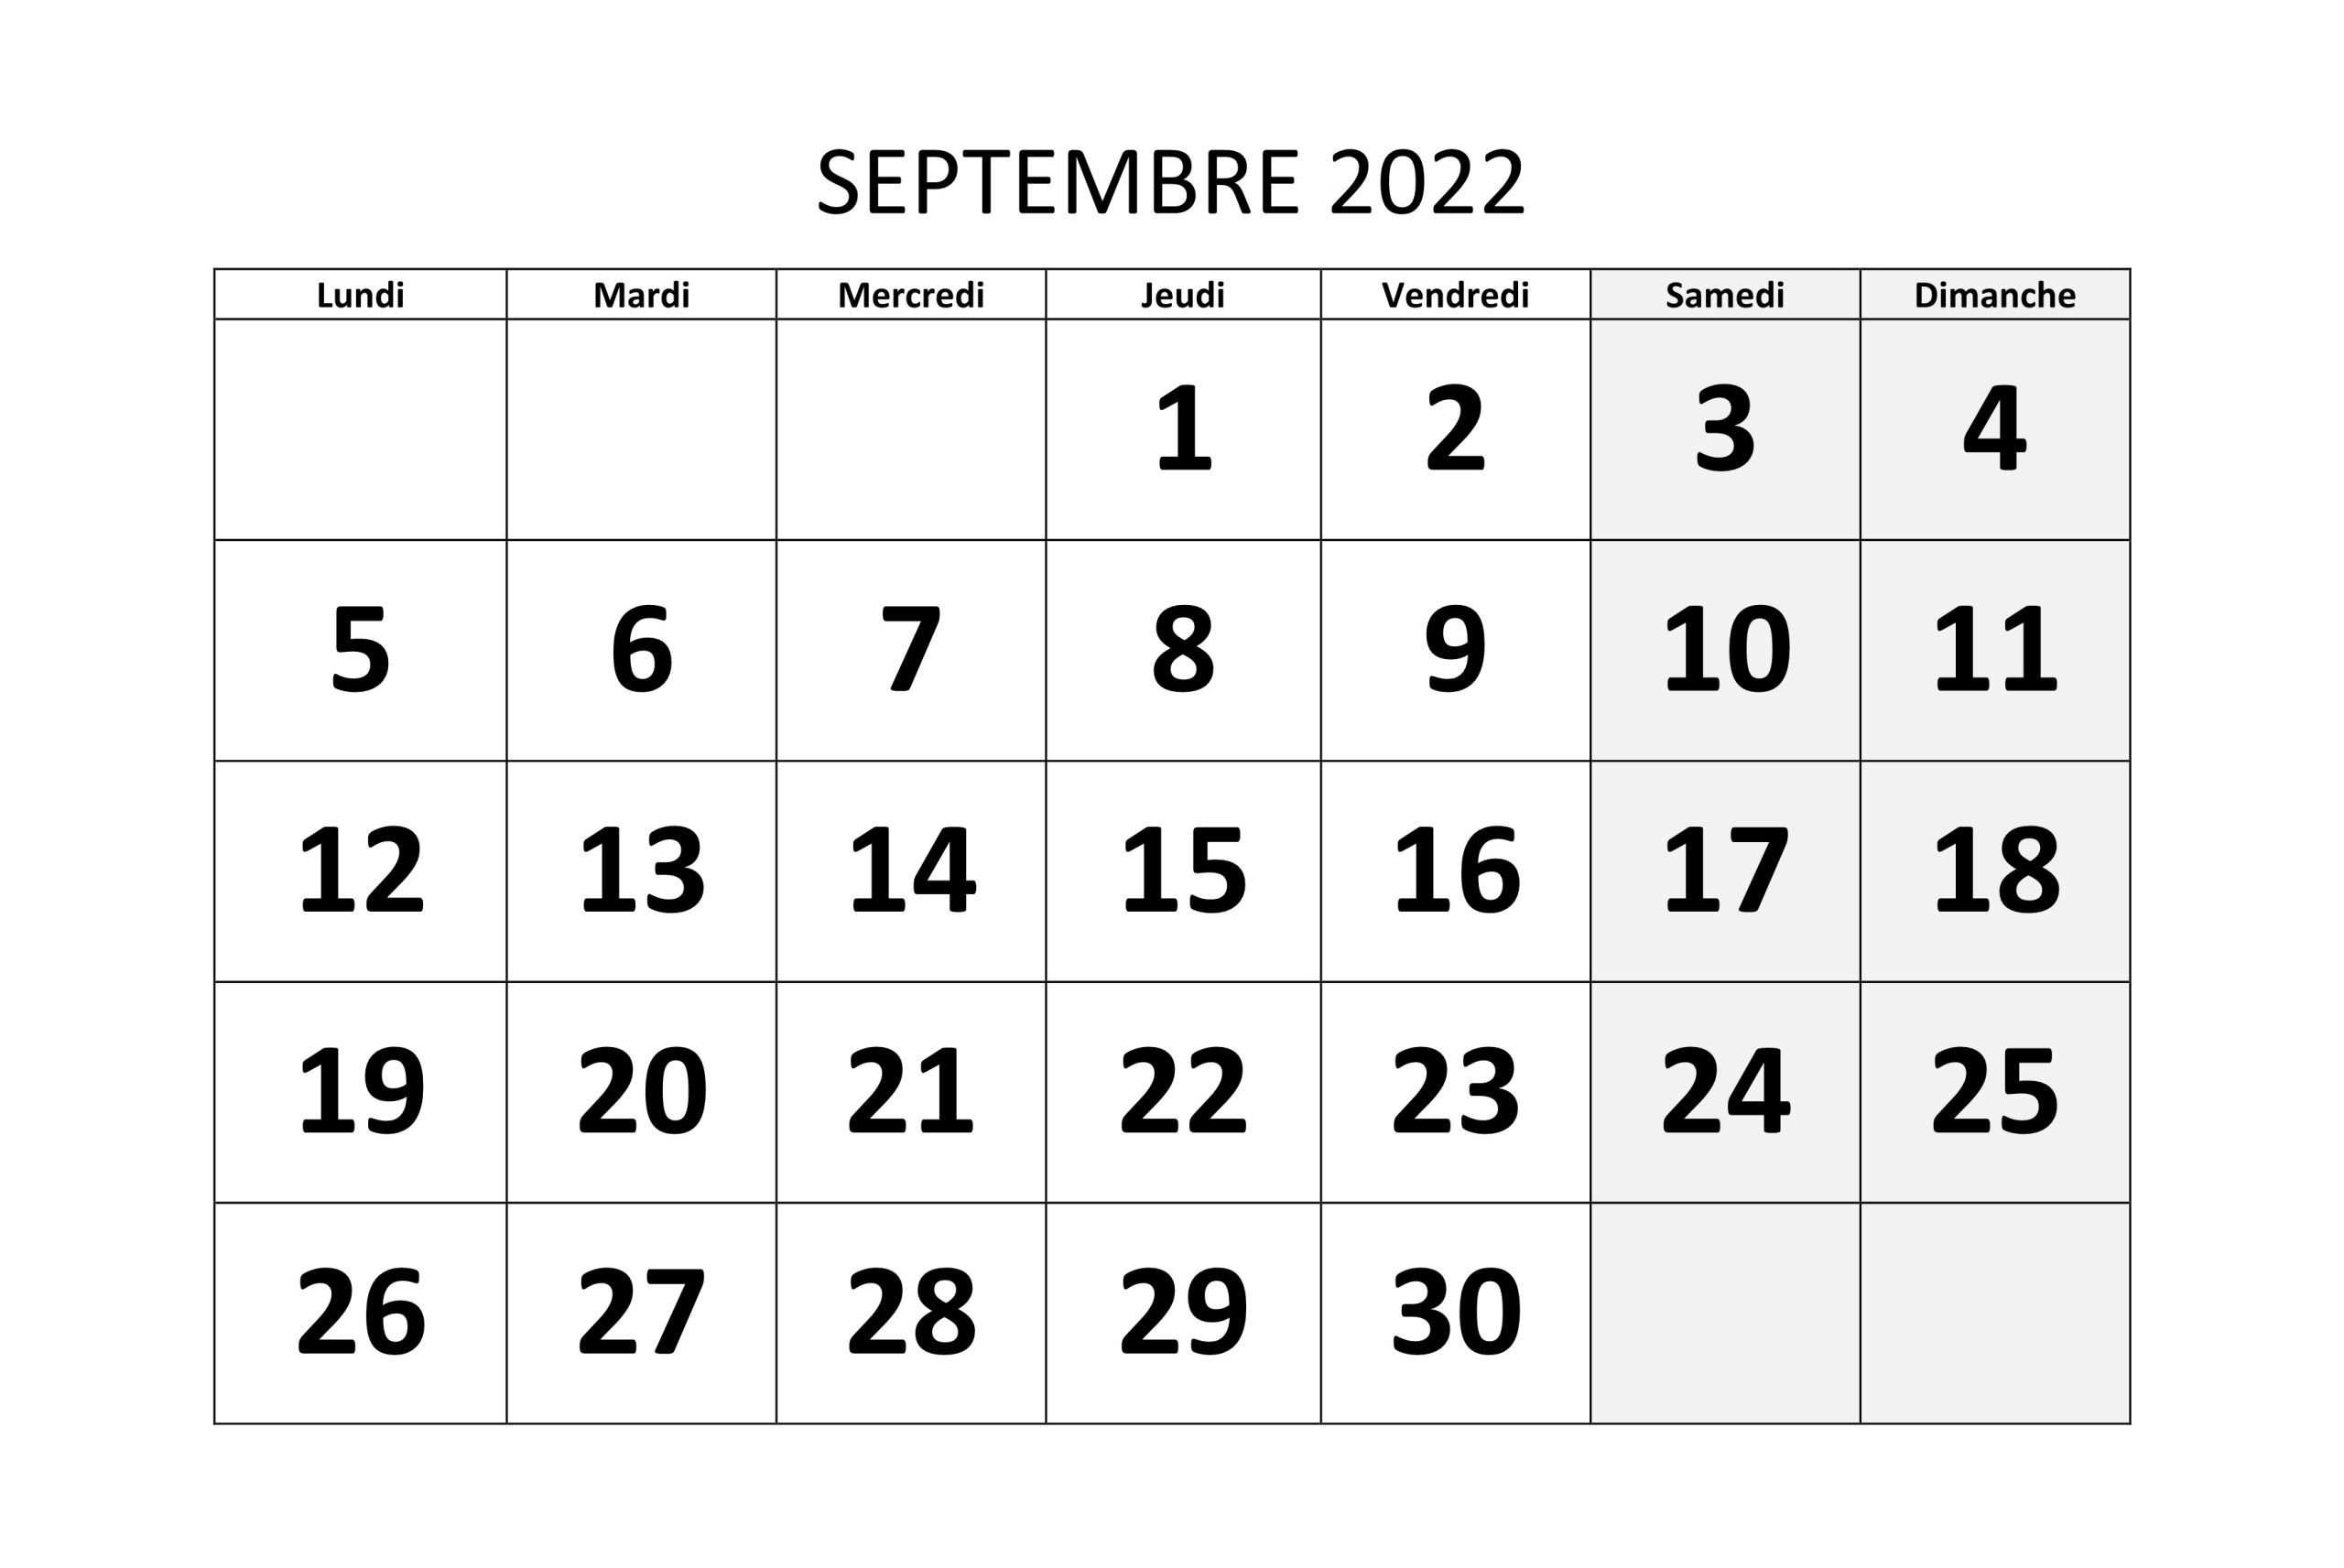 Calendrier Septembre 2022